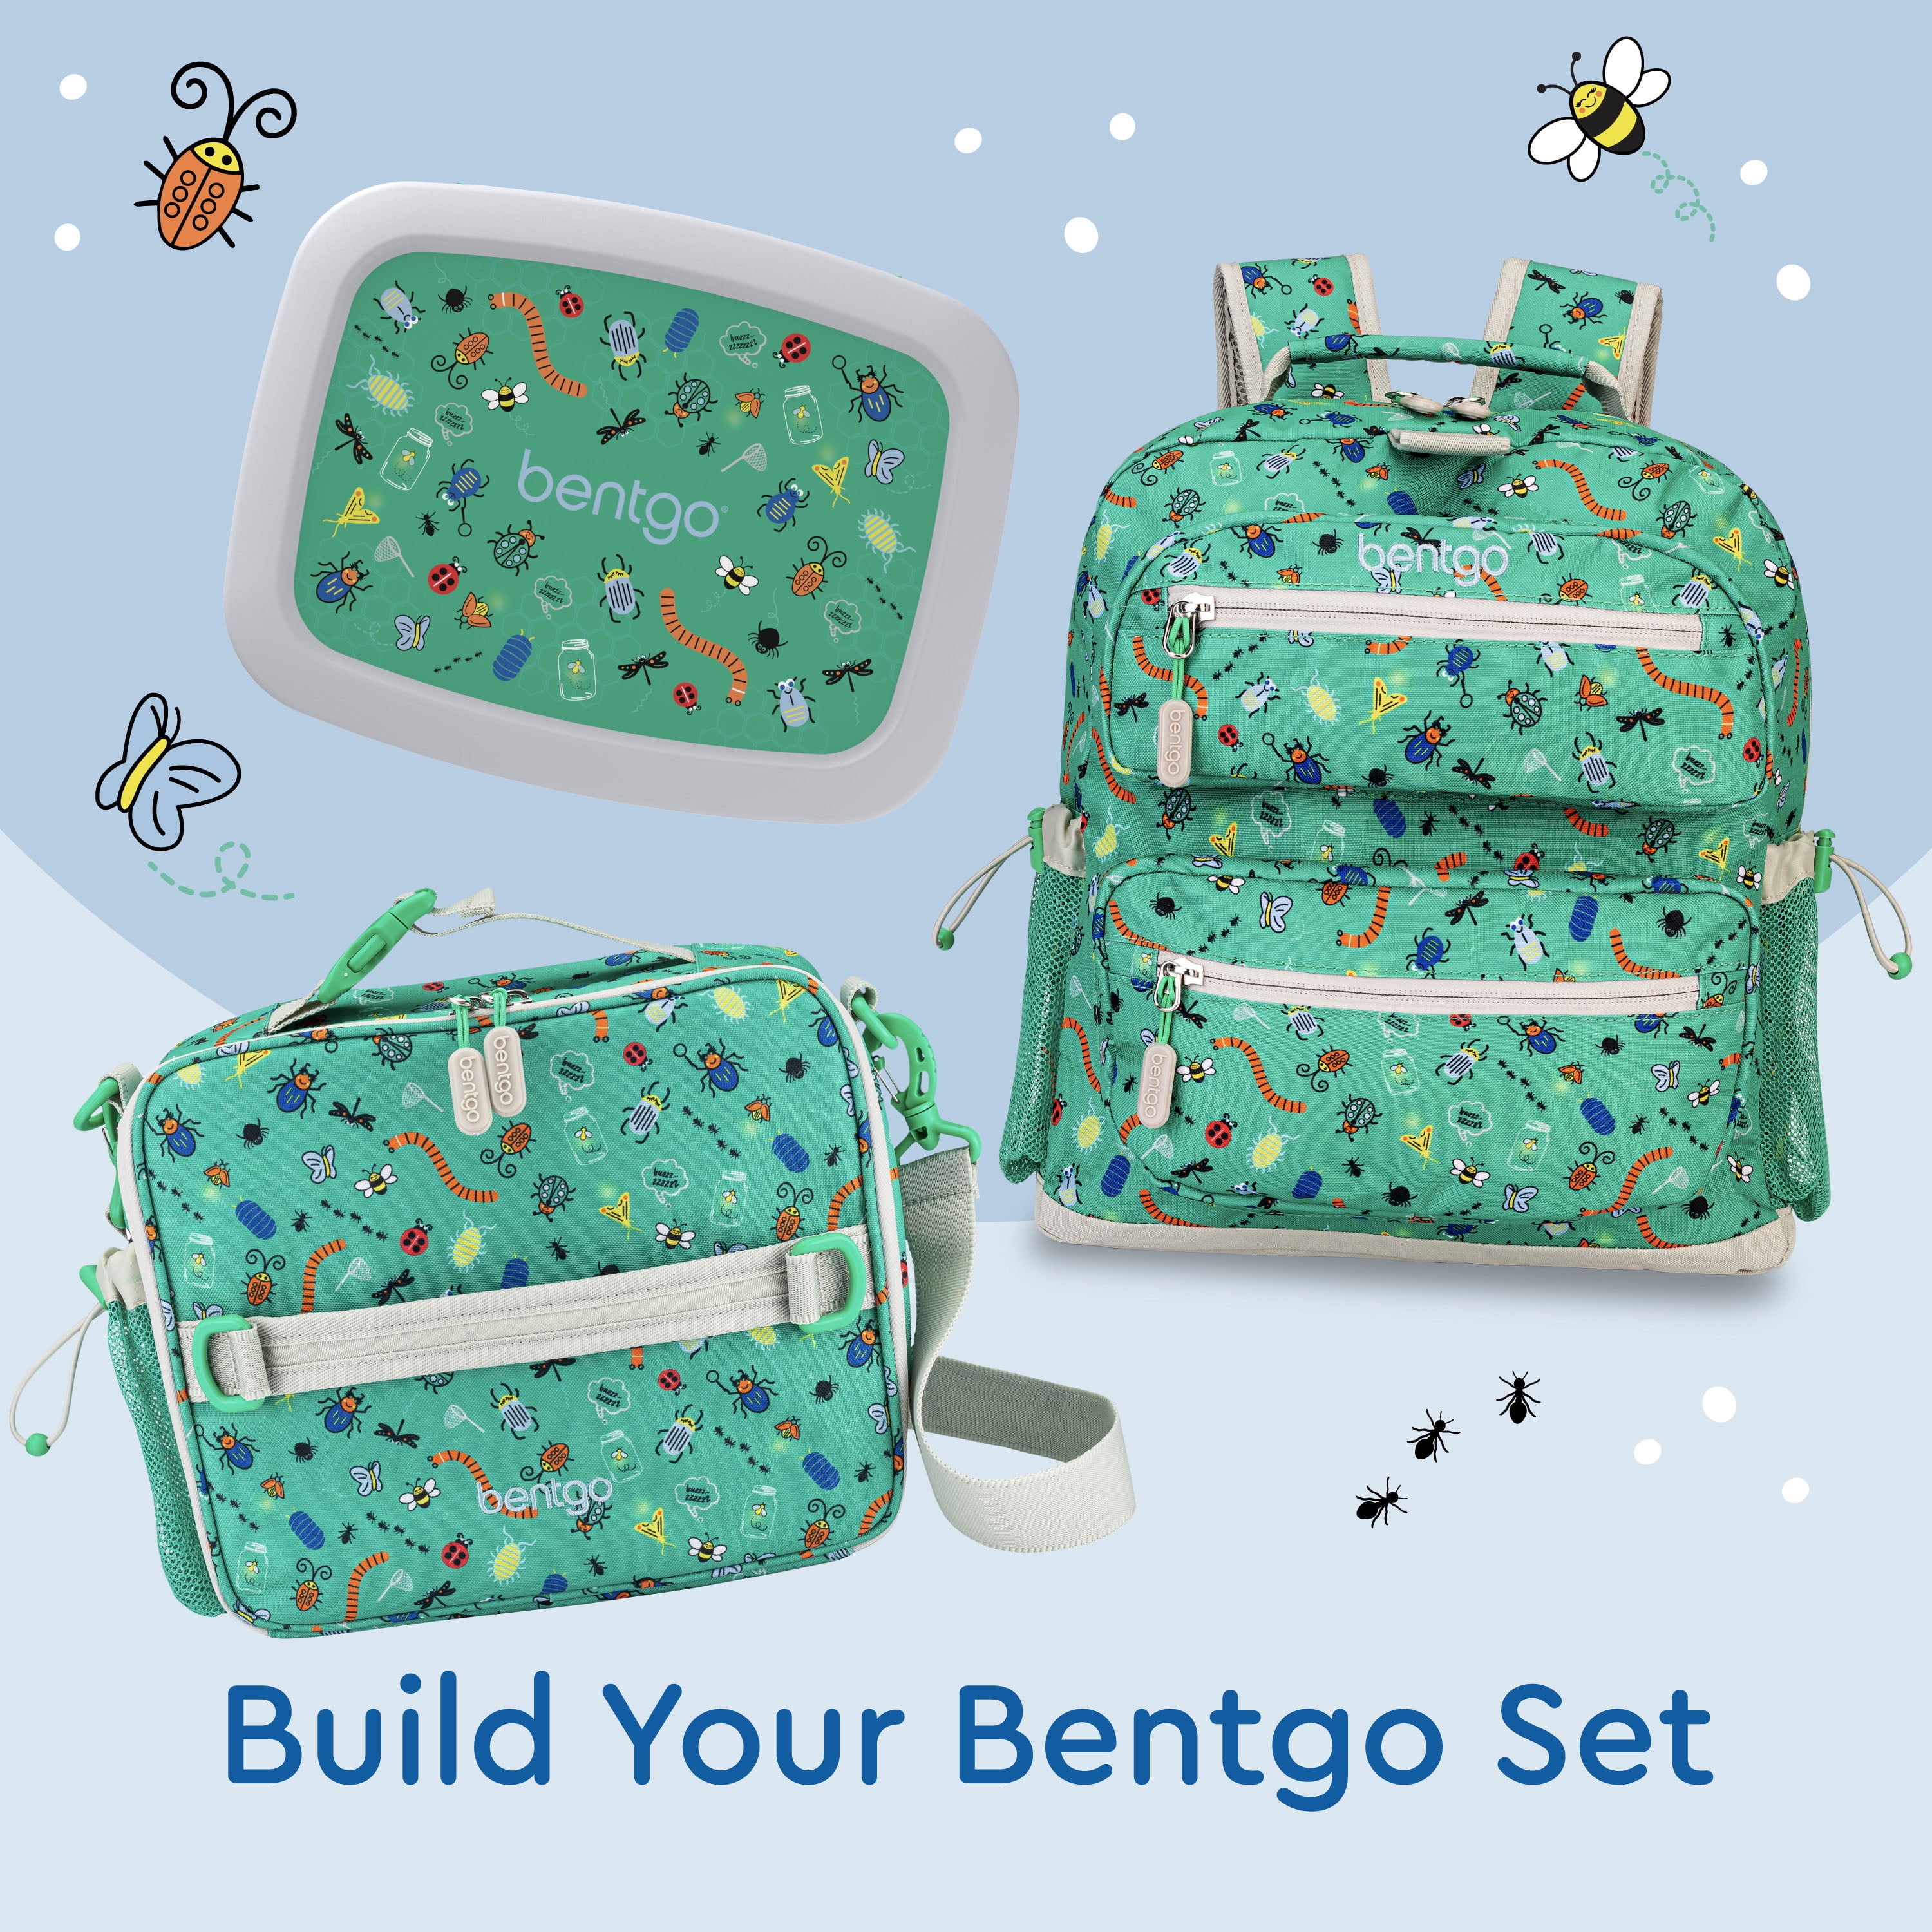 Bentgo Kids Prints (Mermaid Scales) - Lonchera para ninos de Bentgo Bentgo